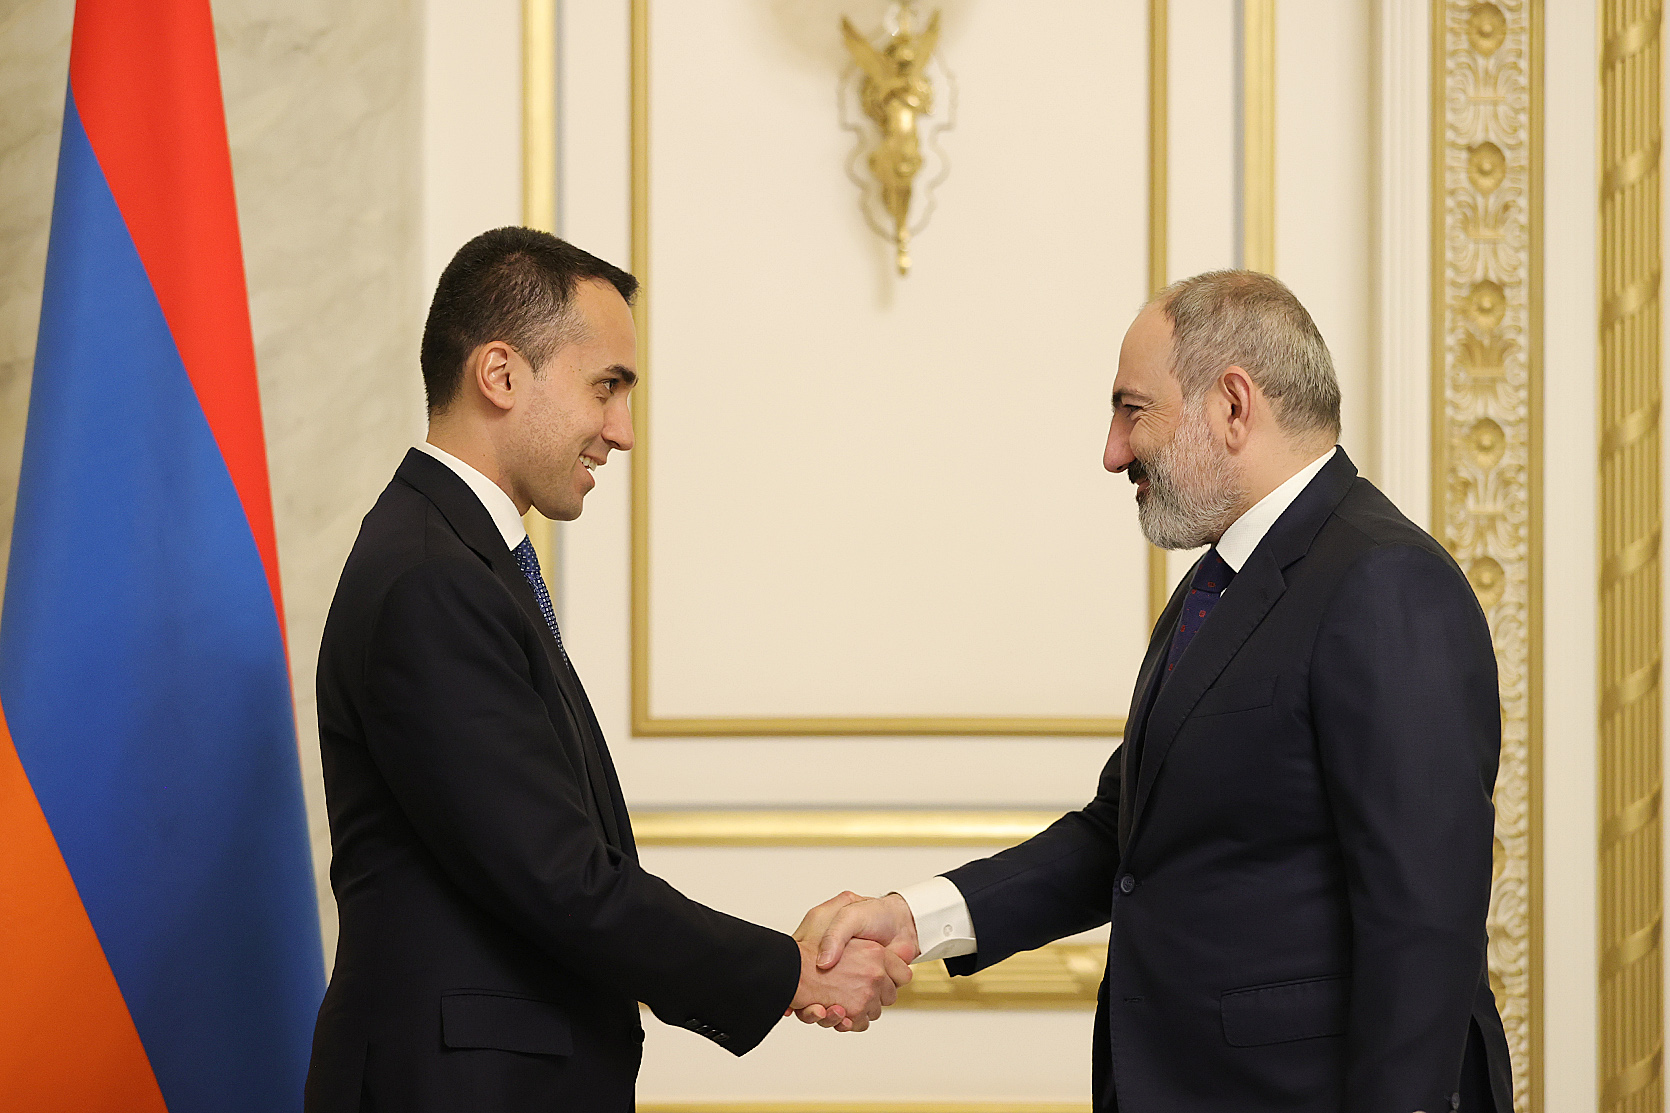 Իտալիան շահագրգիռ է ընդլայնելու և ամրապնդելու Հայաստանի հետ համագործակցությունը. ԱԳՆ